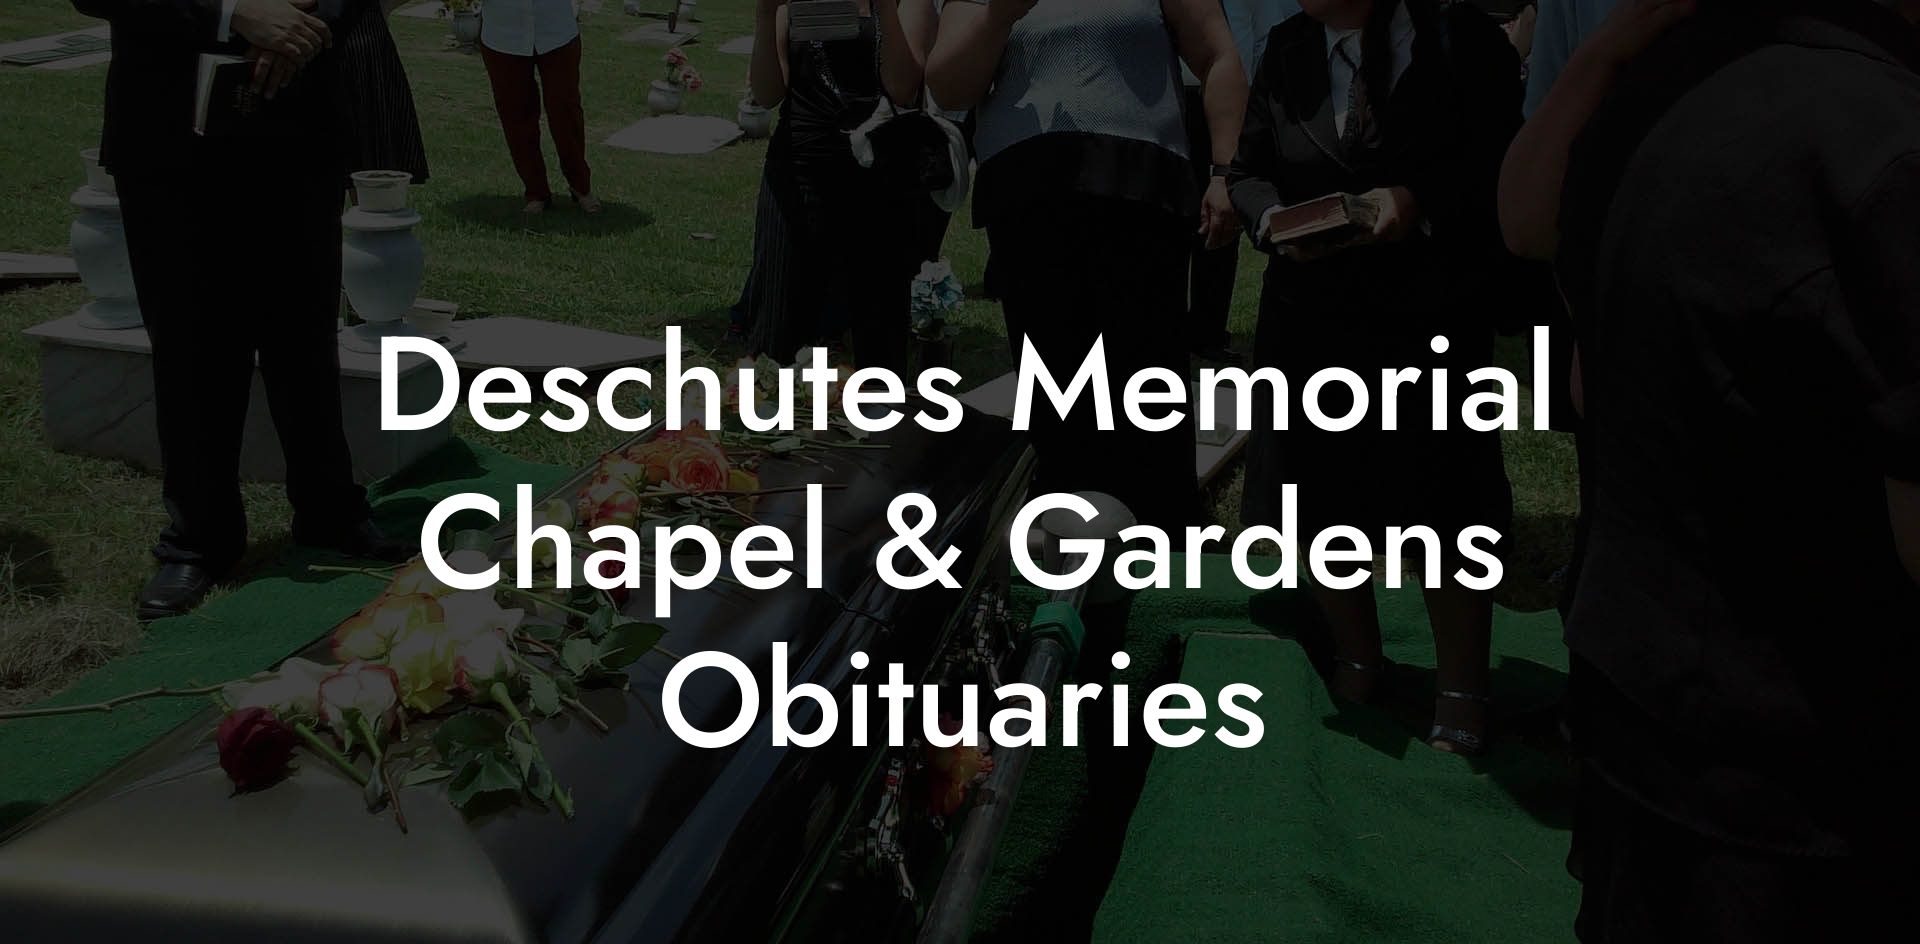 Deschutes Memorial Chapel & Gardens Obituaries